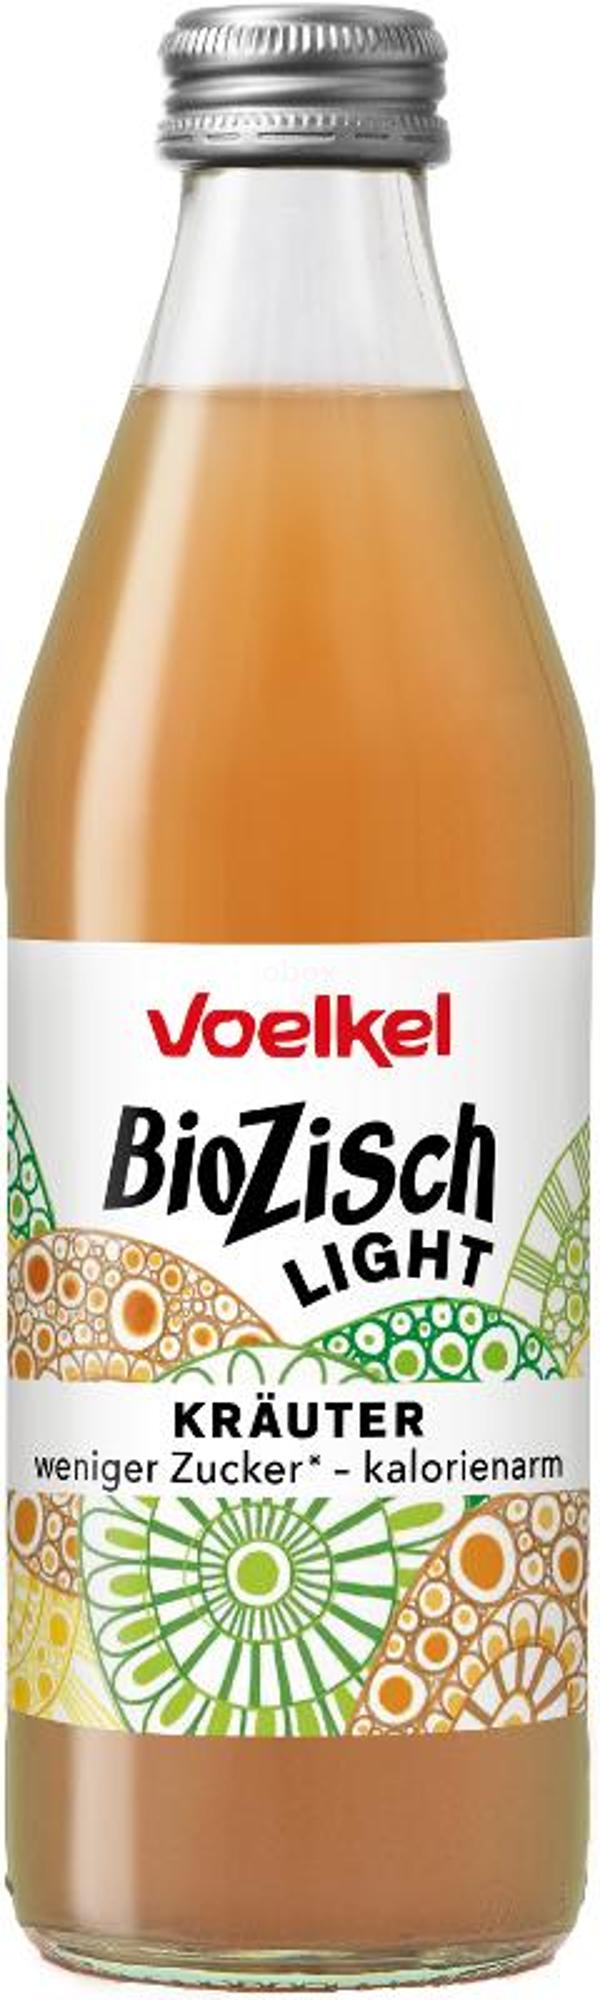 Produktfoto zu Voelkel BioZisch Leicht Kräuter - 0,33l